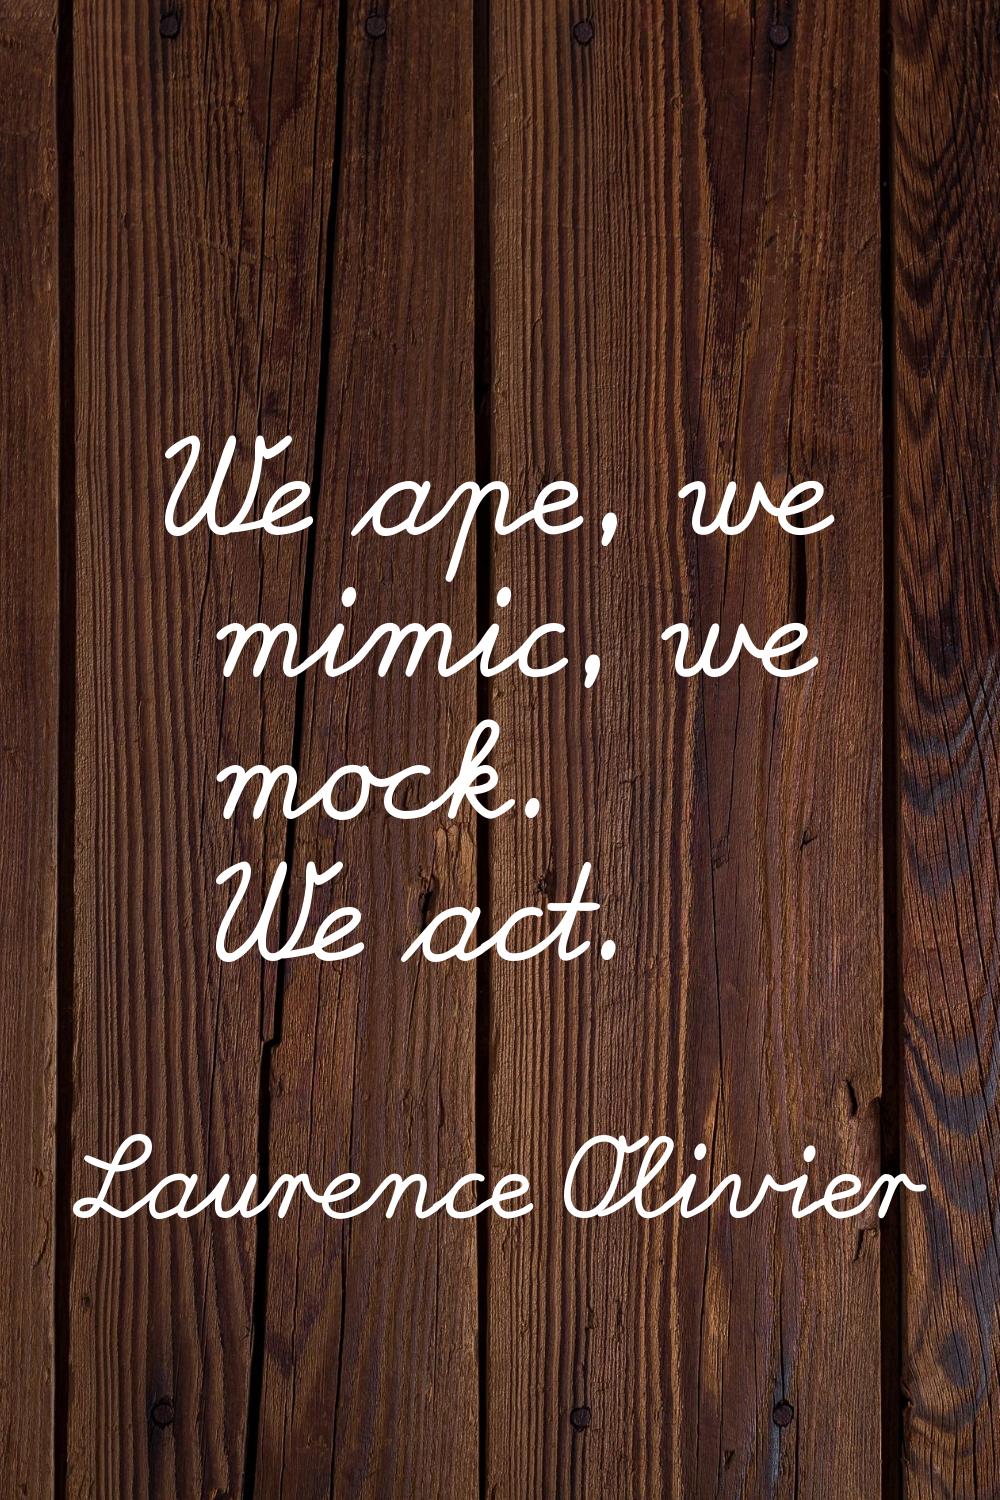 We ape, we mimic, we mock. We act.